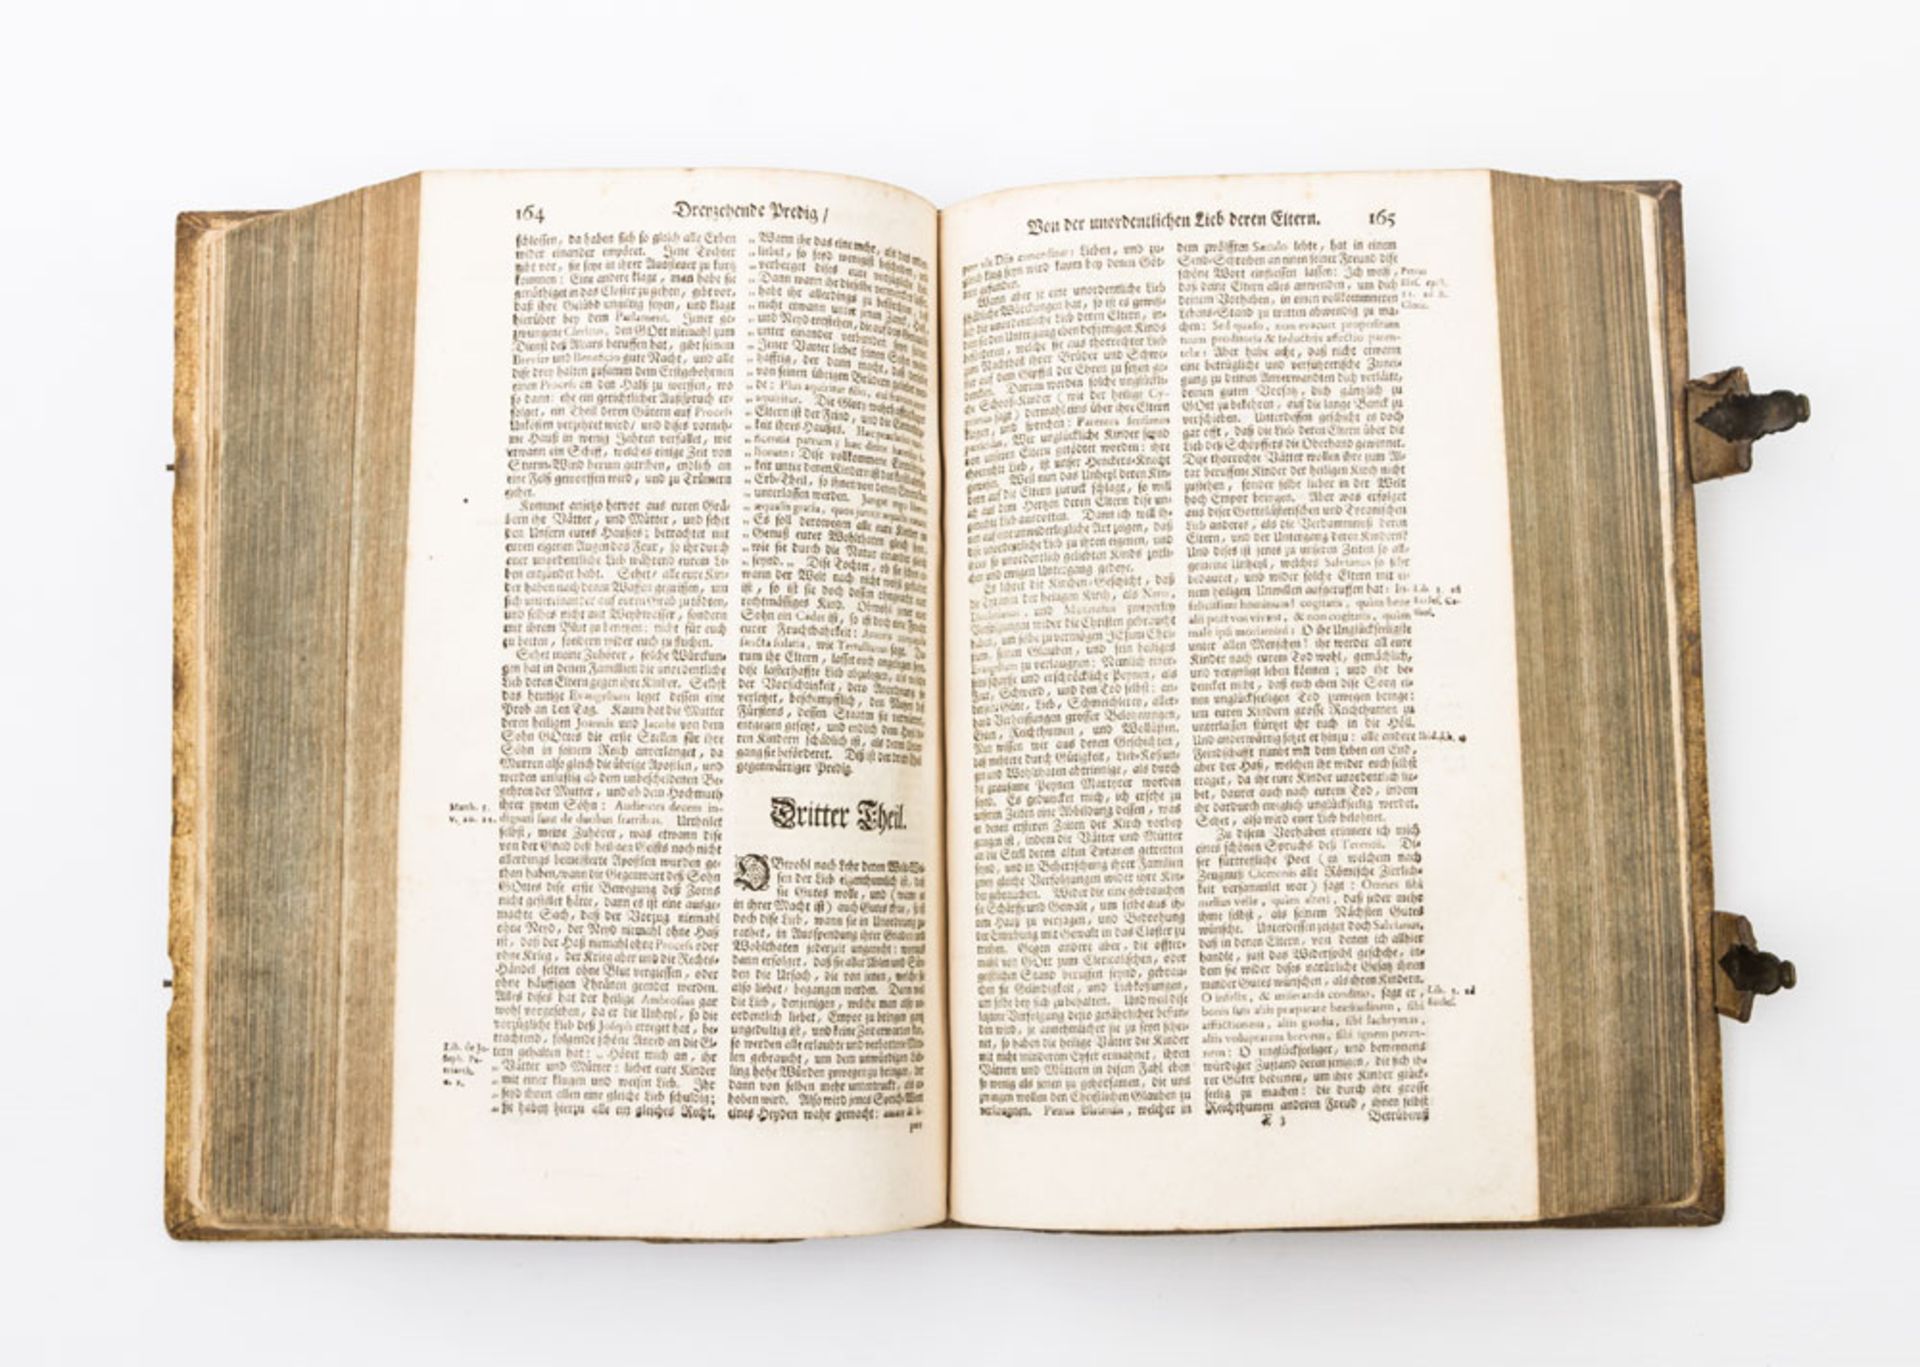 Hist. Predigerschrift, 18.Jh. - Nikolai de Dijon, Auserlesene und lehrreiche Predigen, welche in